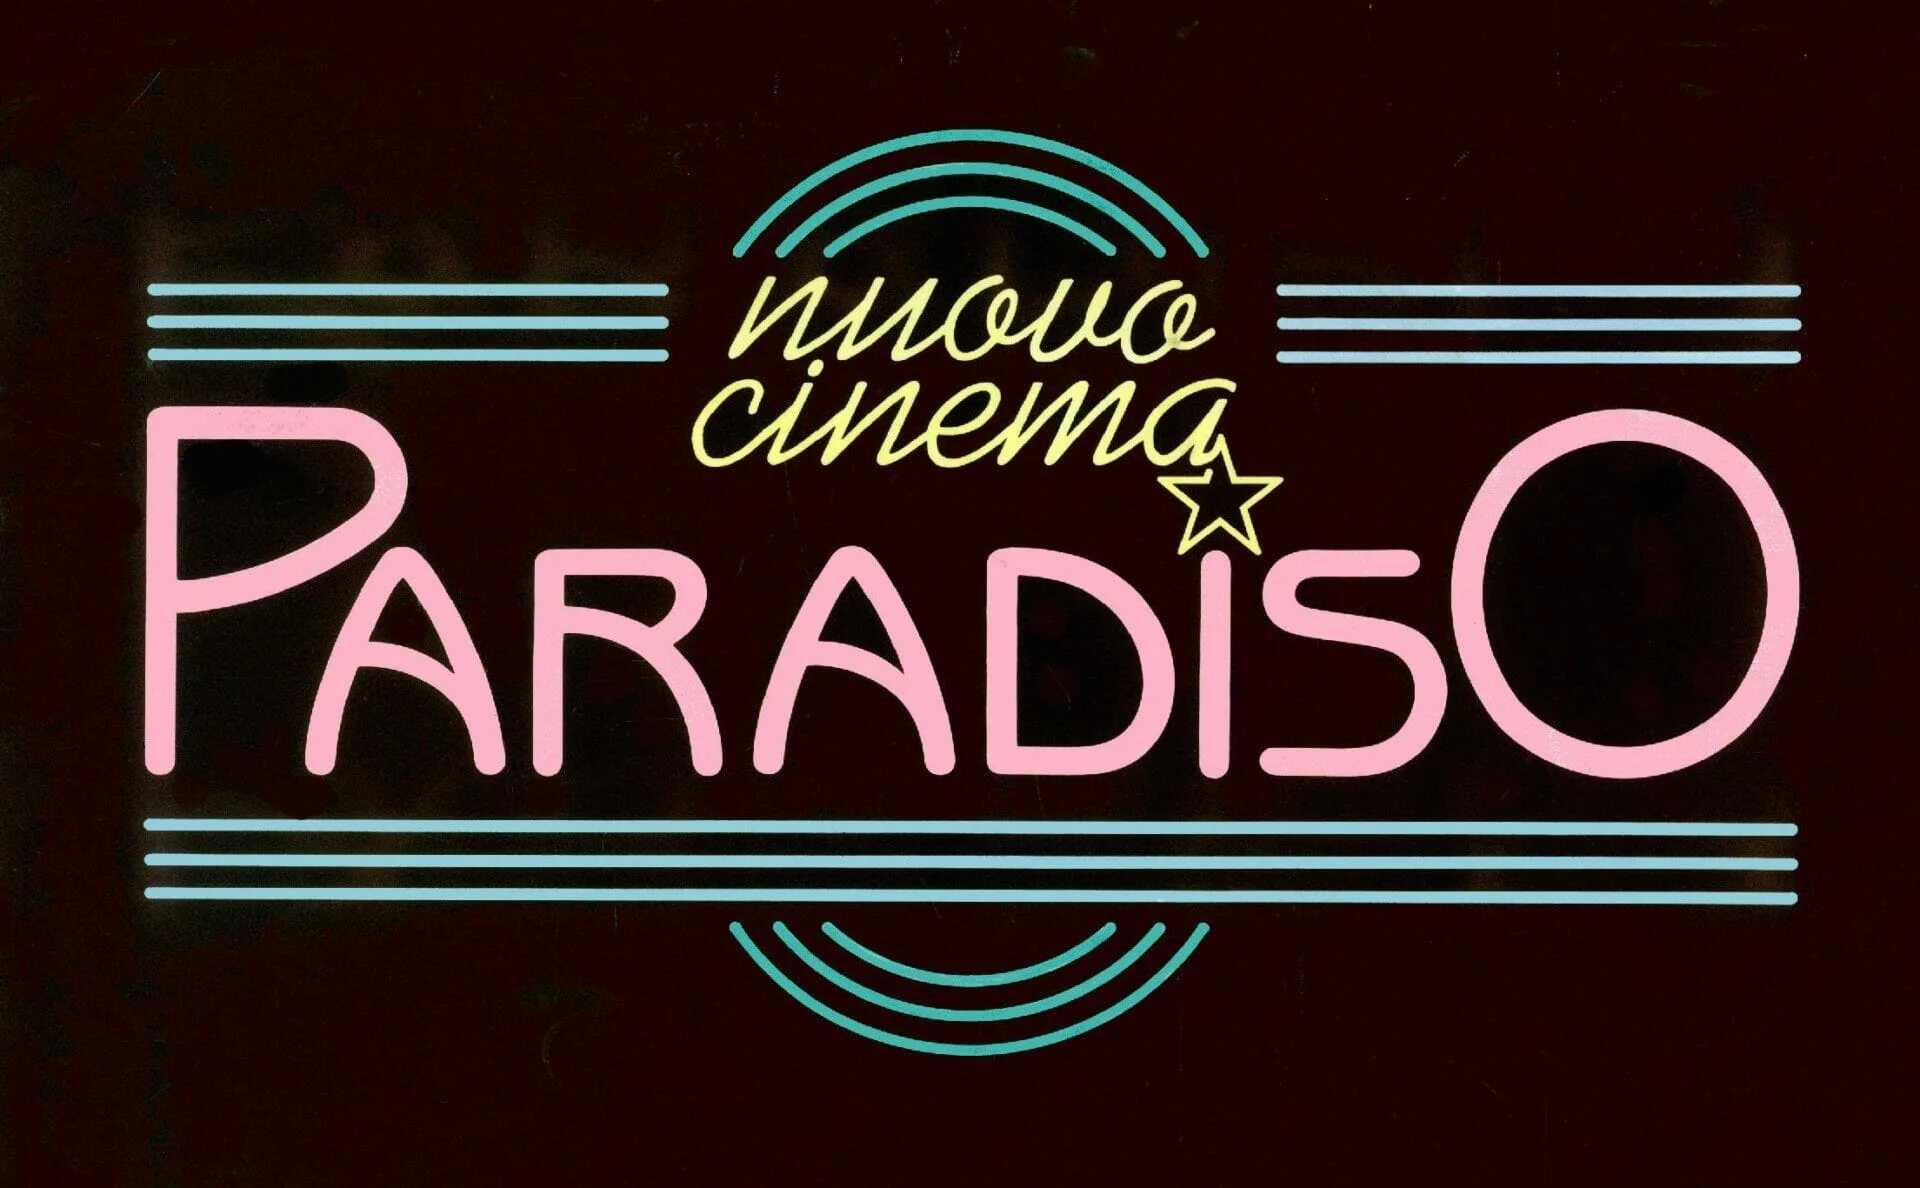 Nuovo Cinema Paradiso | Un'ode nostalgica alla Settima Arte